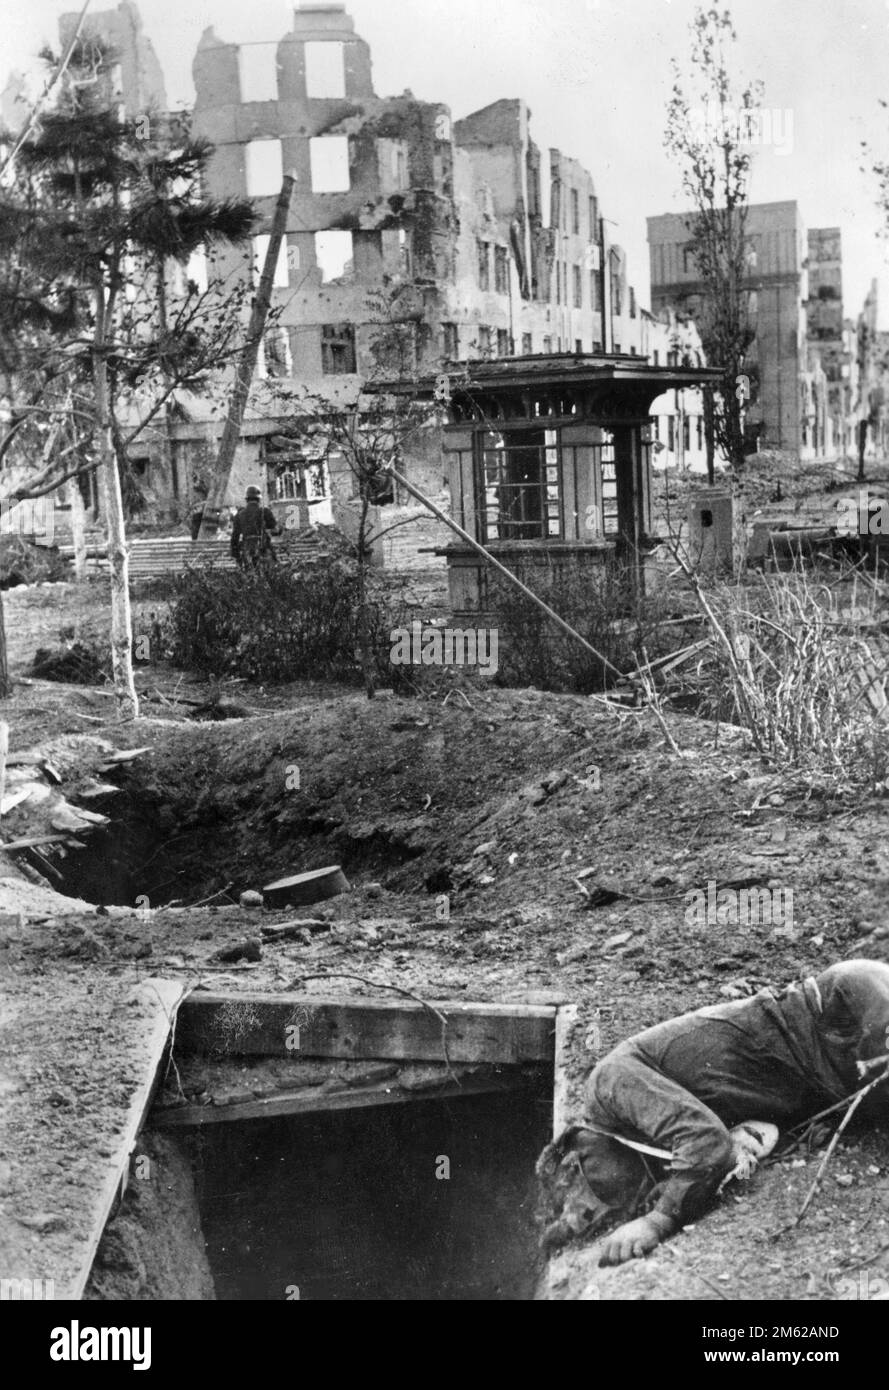 Le rovine e i rifugi abbandonati di Stalingrado dopo la battaglia di Stalingrado durante l'operazione Barbarossa, l'invasione nazista dell'Unione Sovietica Foto Stock